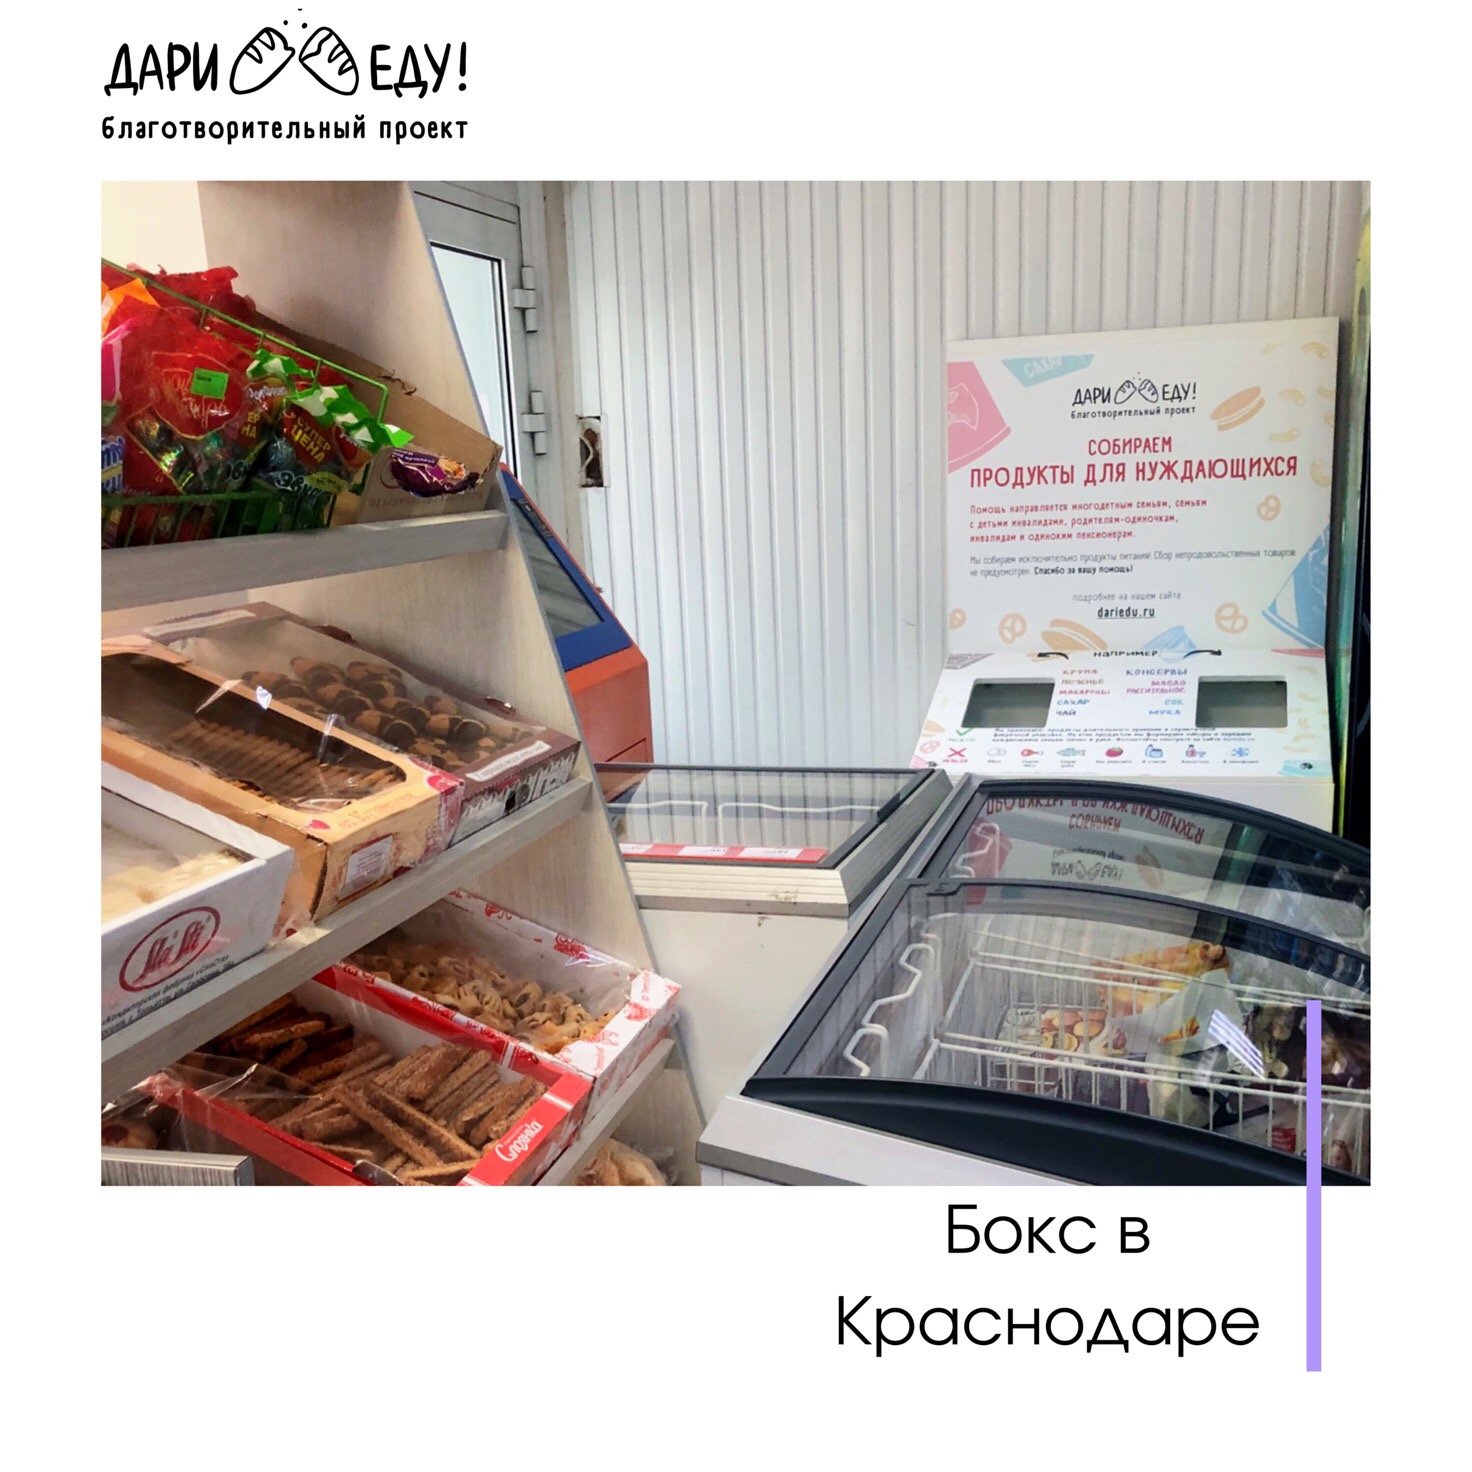 report_2019-dari-edu-v-krasnodare-_20190913160532.jpg